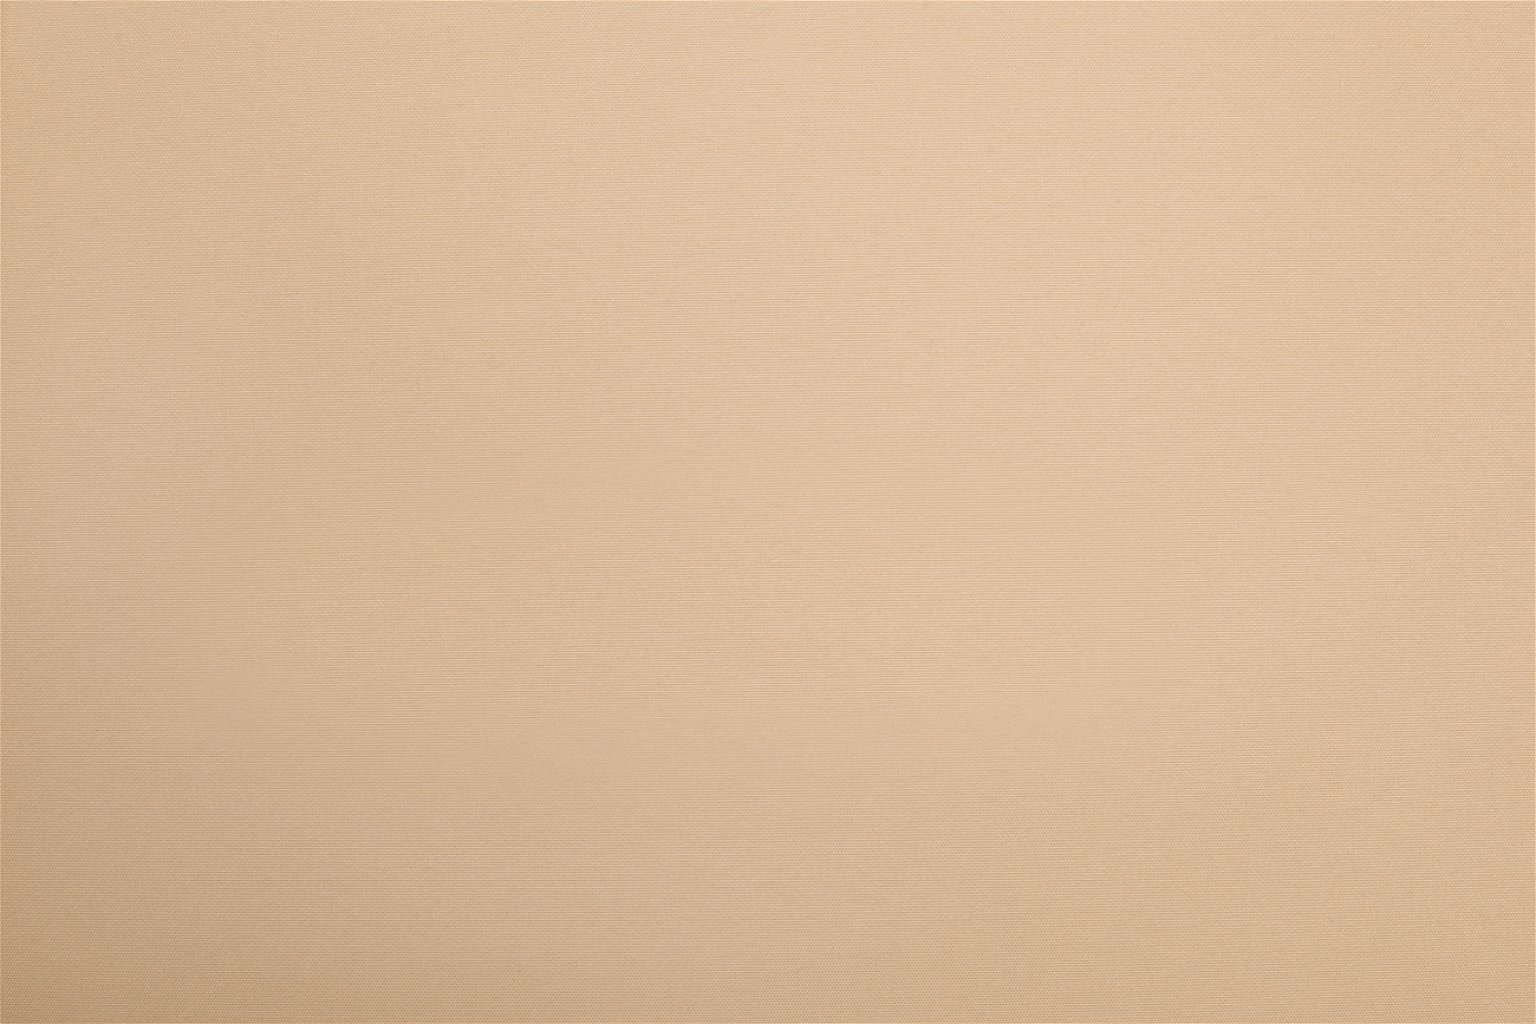 Mini ritininė užuolaida BERLIN Blackout, šv. rudos sp., 81 x 150 cm, 100 % poliesteris - 4